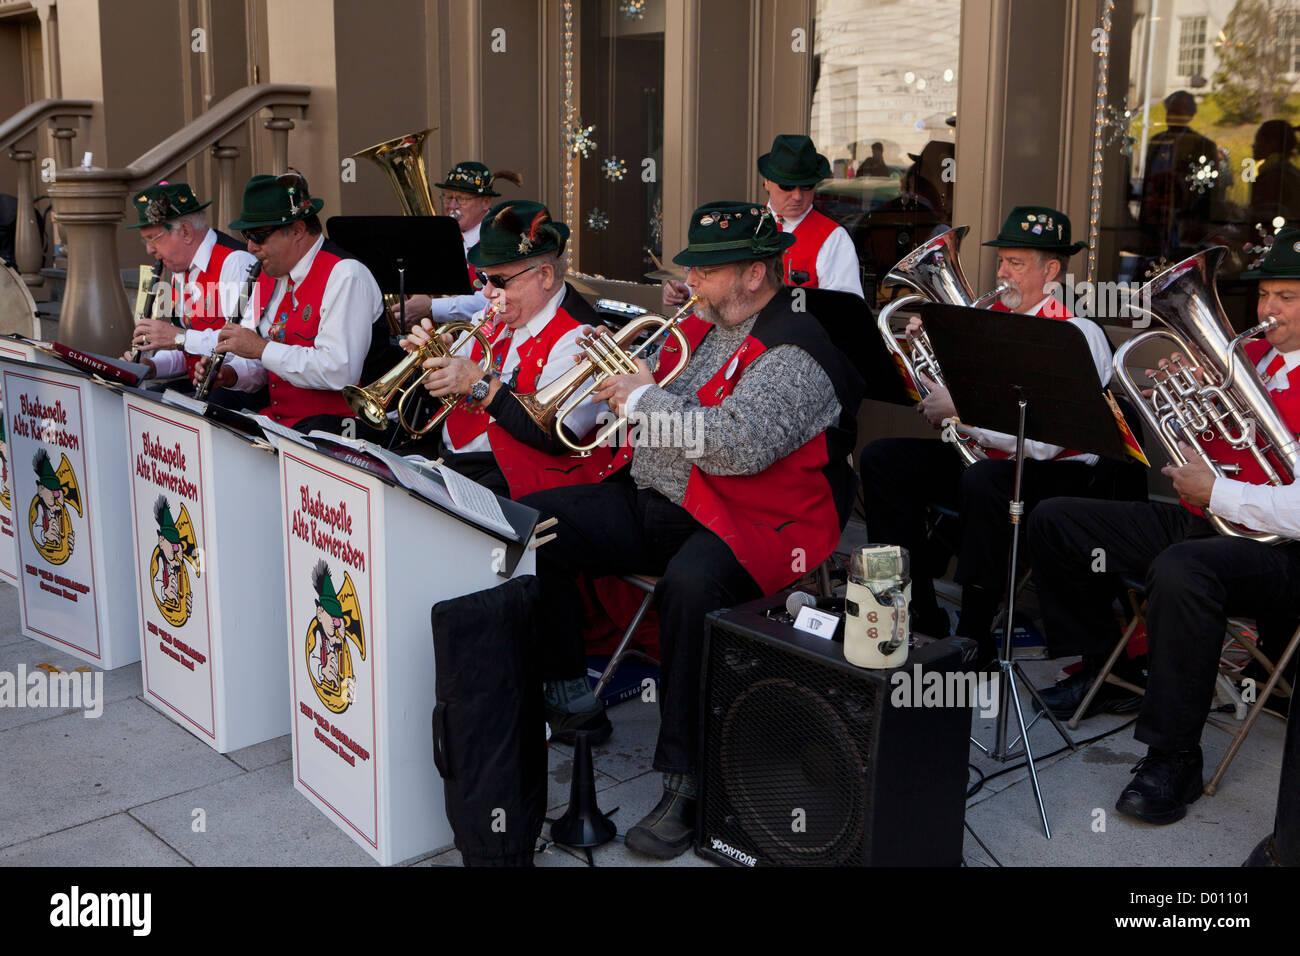 La musique traditionnelle allemande groupe jouant à l'extérieur Banque D'Images